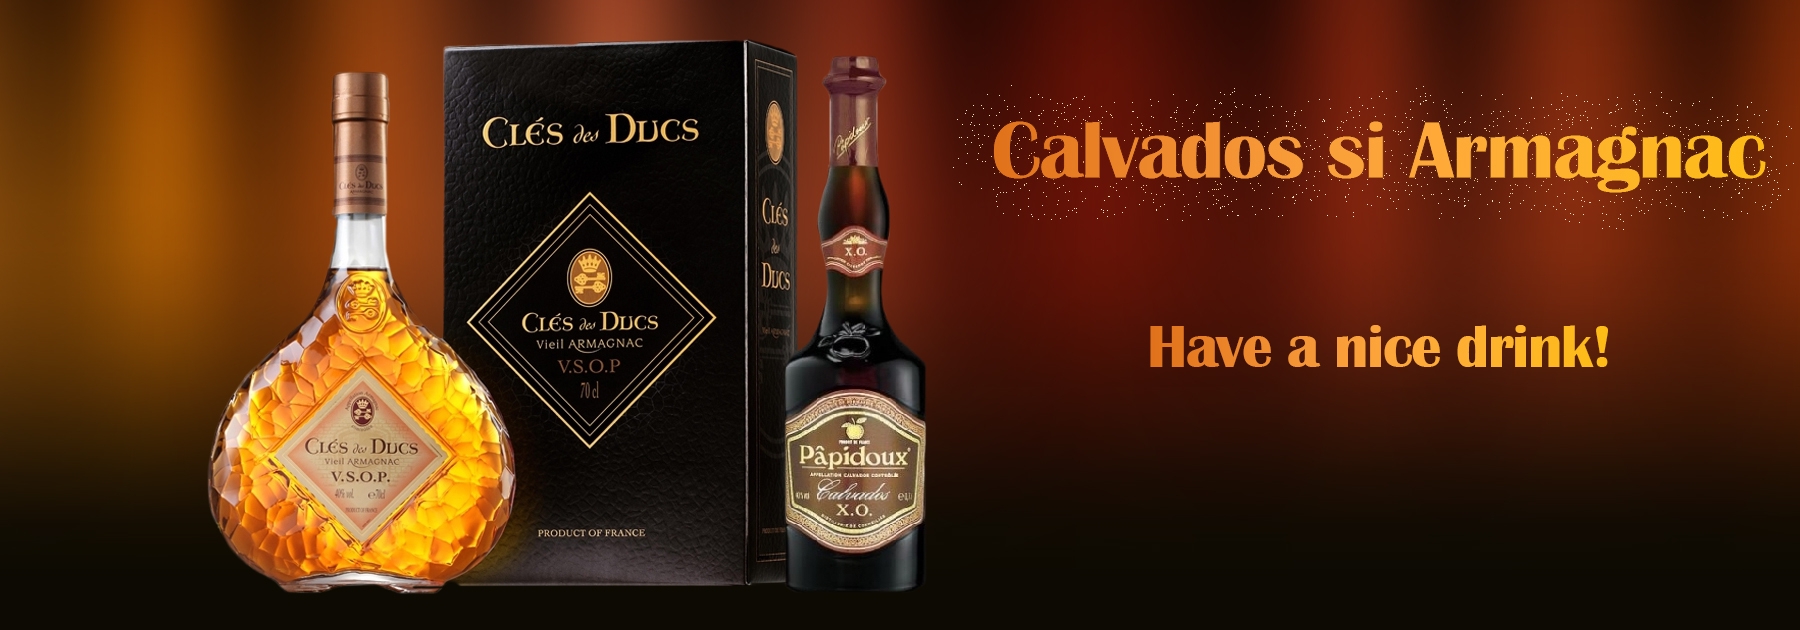 Calvados si Armagnac